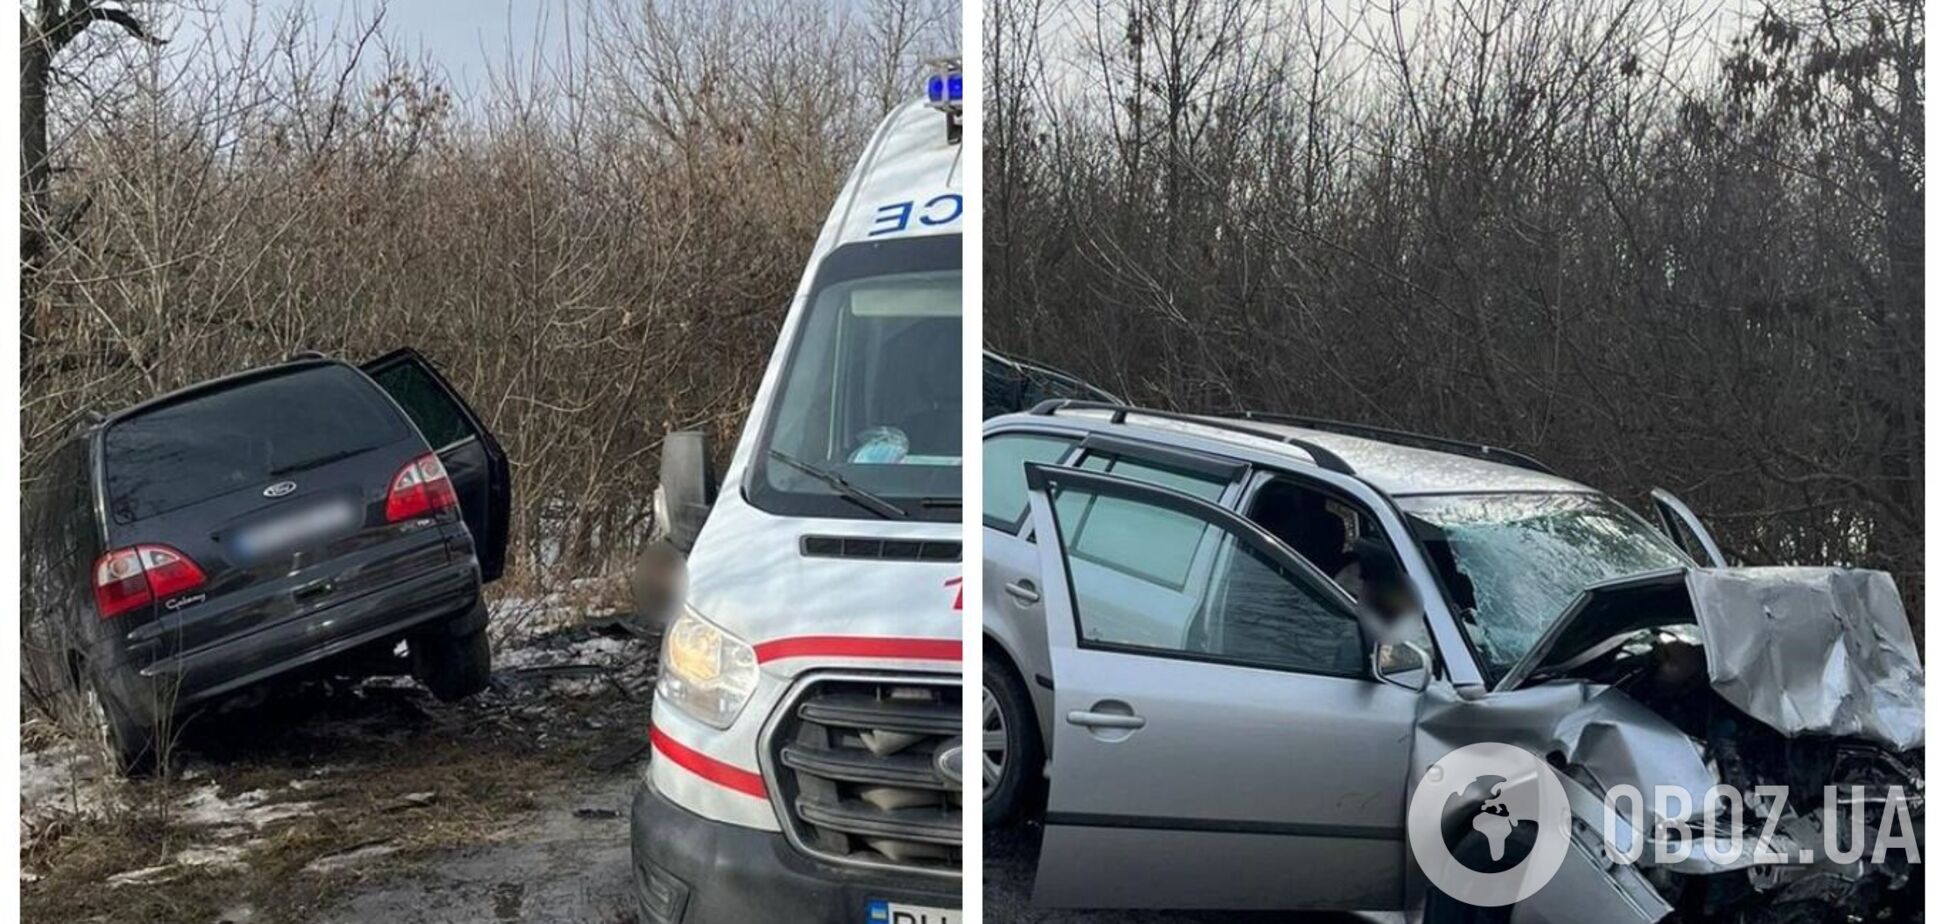 На Одесчине водитель устроил смертельное ДТП и сбежал: погибли два человека. Фото